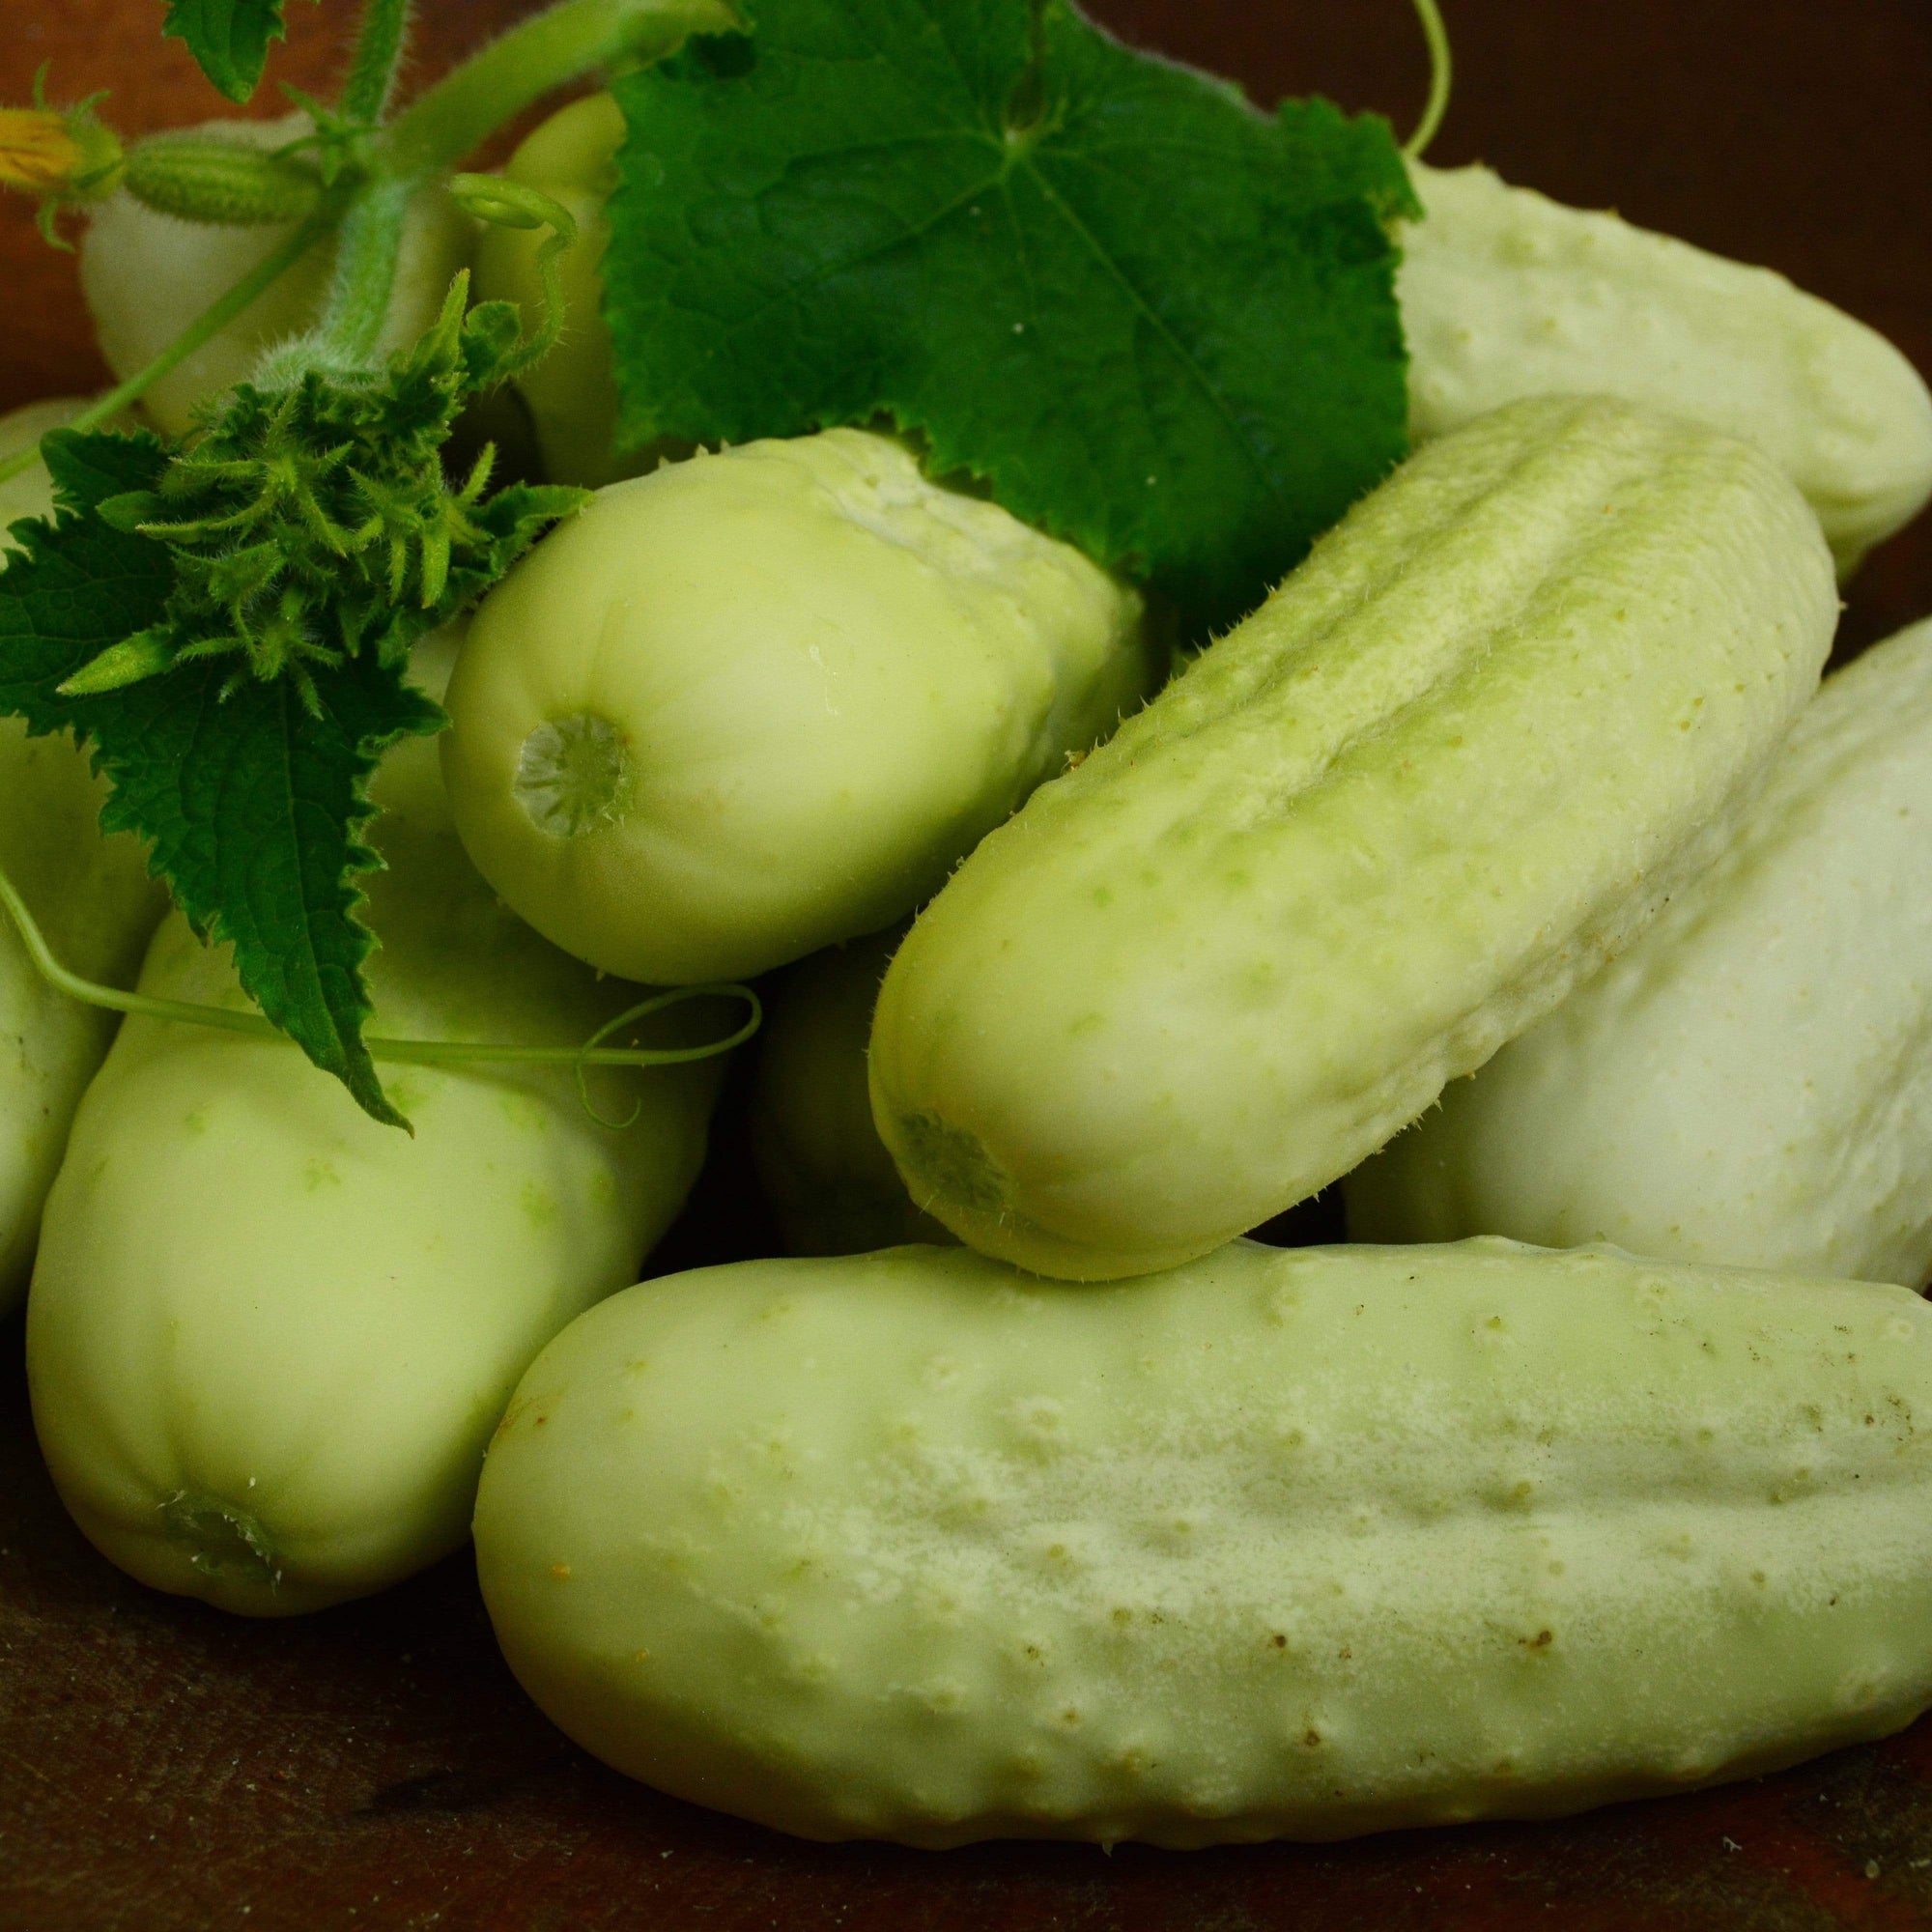 White Wonder Heirloom Cucumber